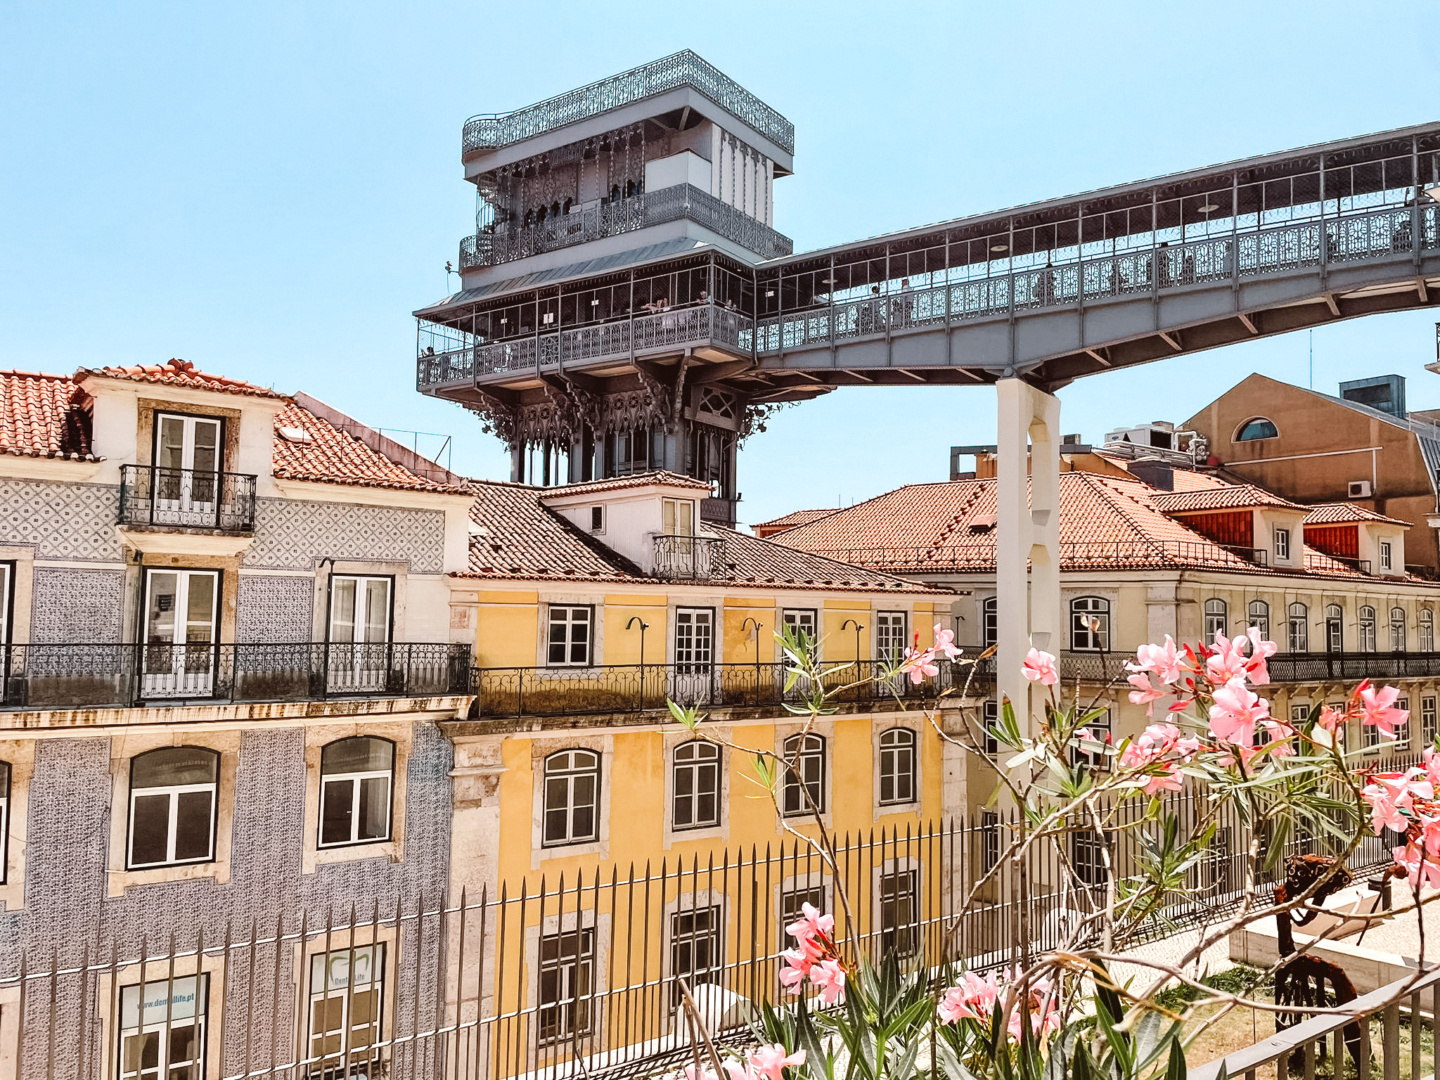 WanderlustBee- Lisbon June 23